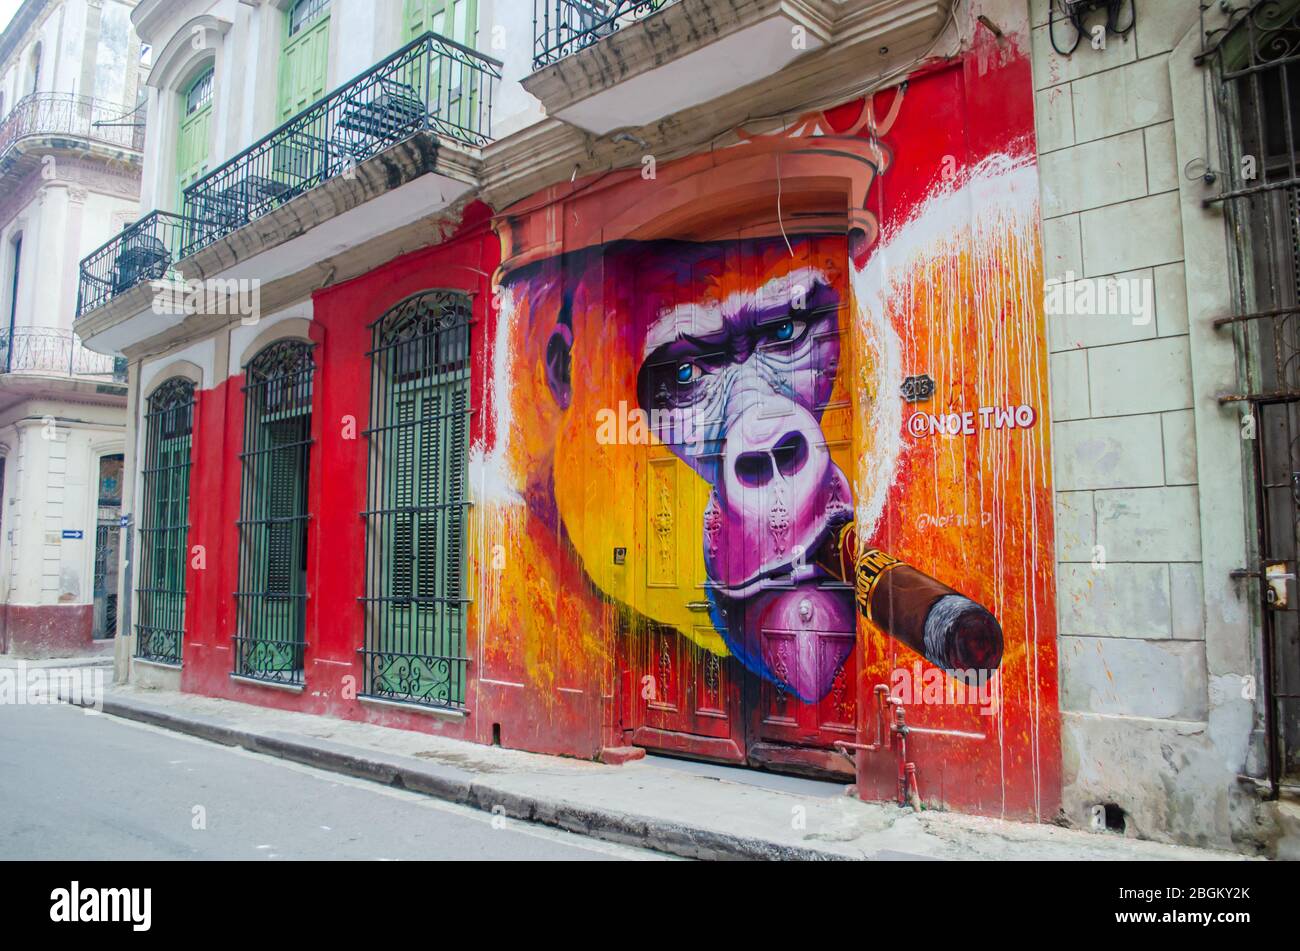 Vecchia Havana strada colorata. Sulla destra si trova una parete graffiti dell'artista Noé Two Foto Stock